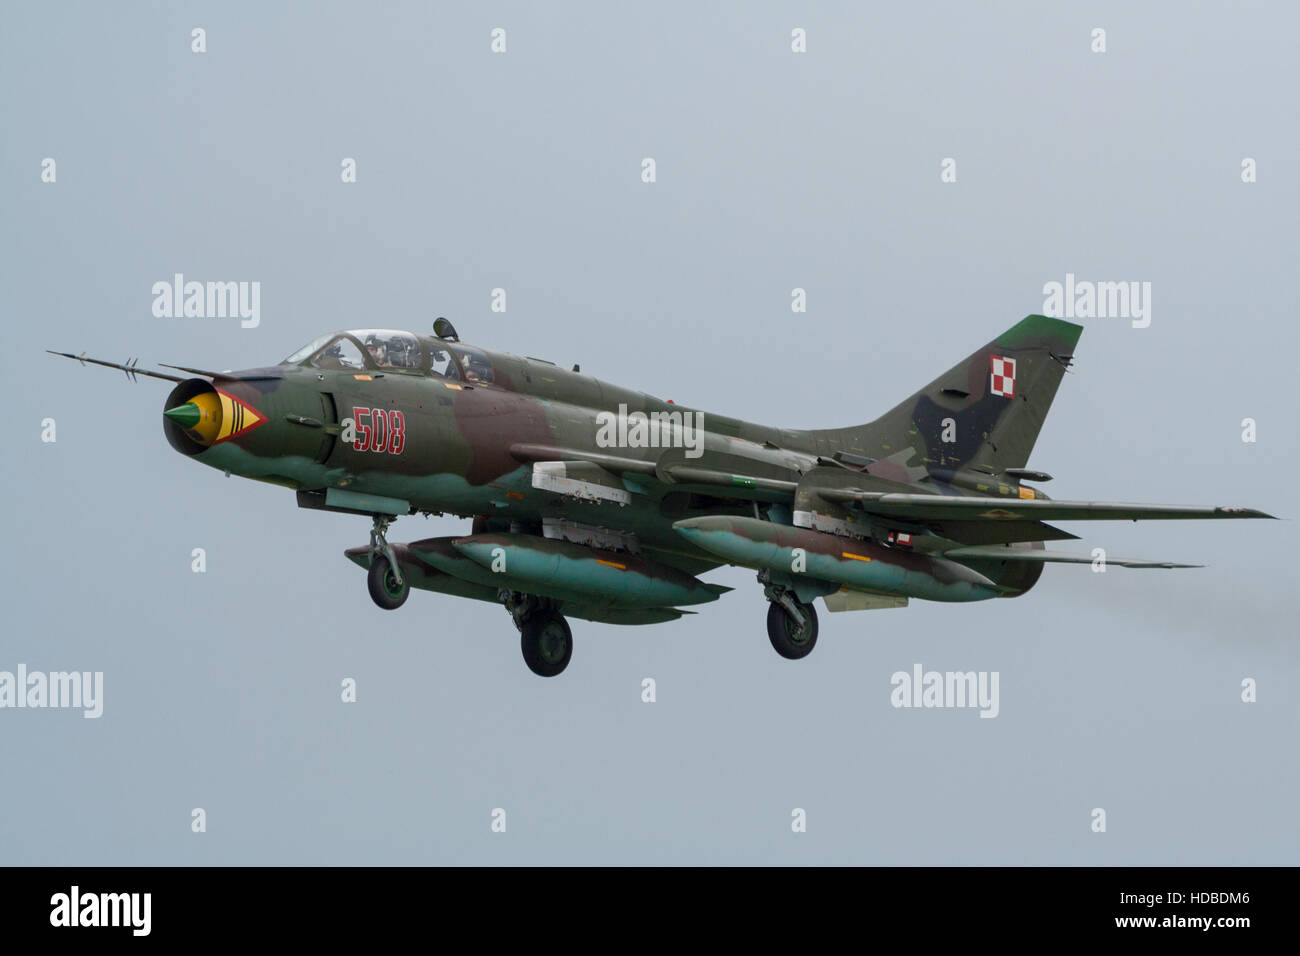 Armée de l'Air polonaise Sukhoi Su-22 bomber plane landing Banque D'Images